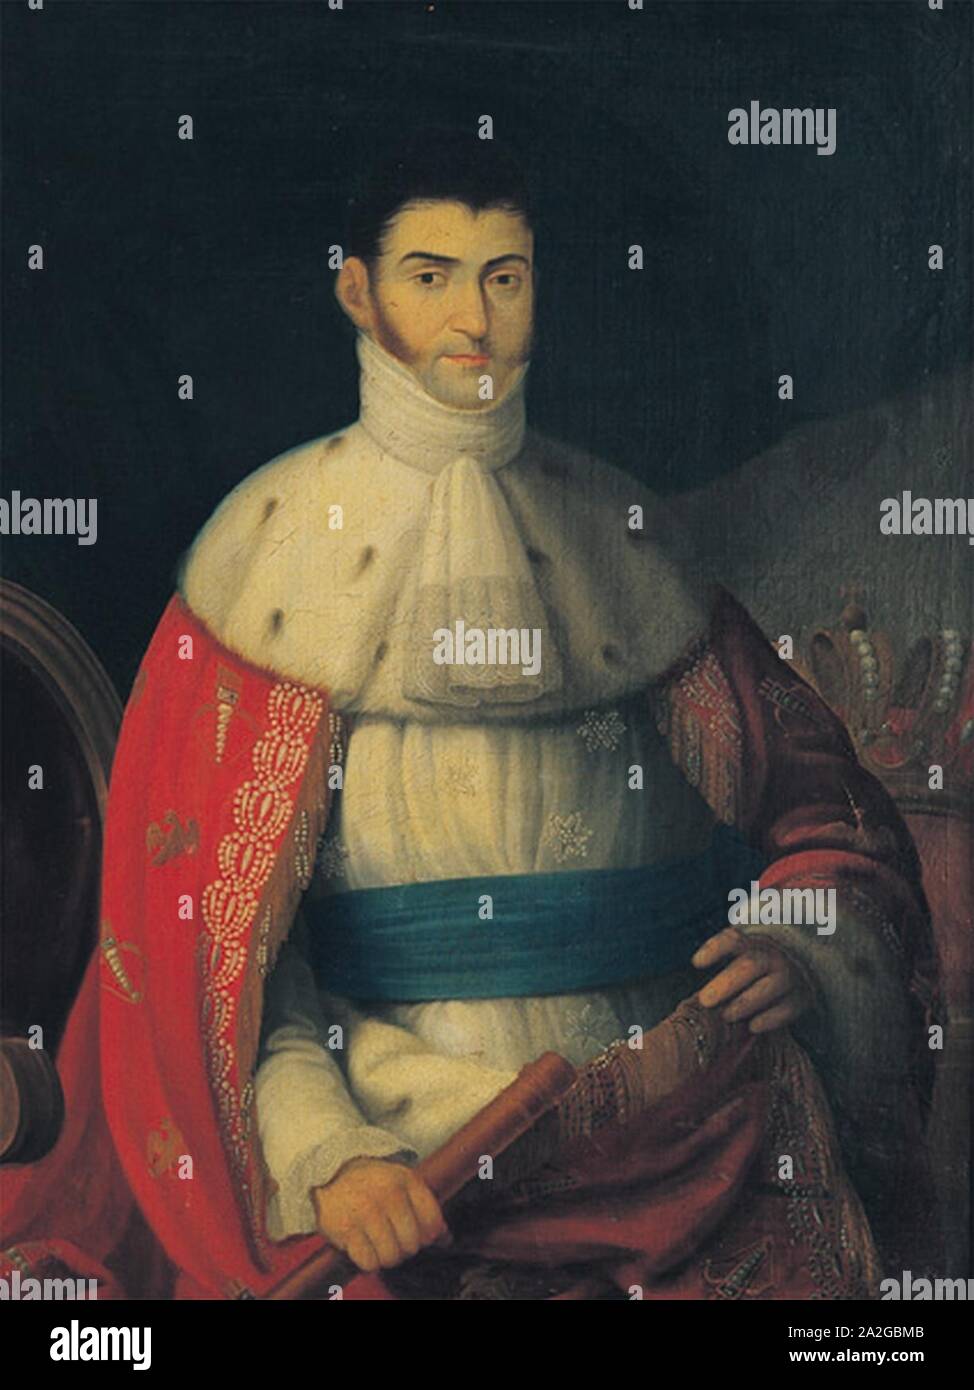 Emperador Agustin de Iturbide. Stockfoto